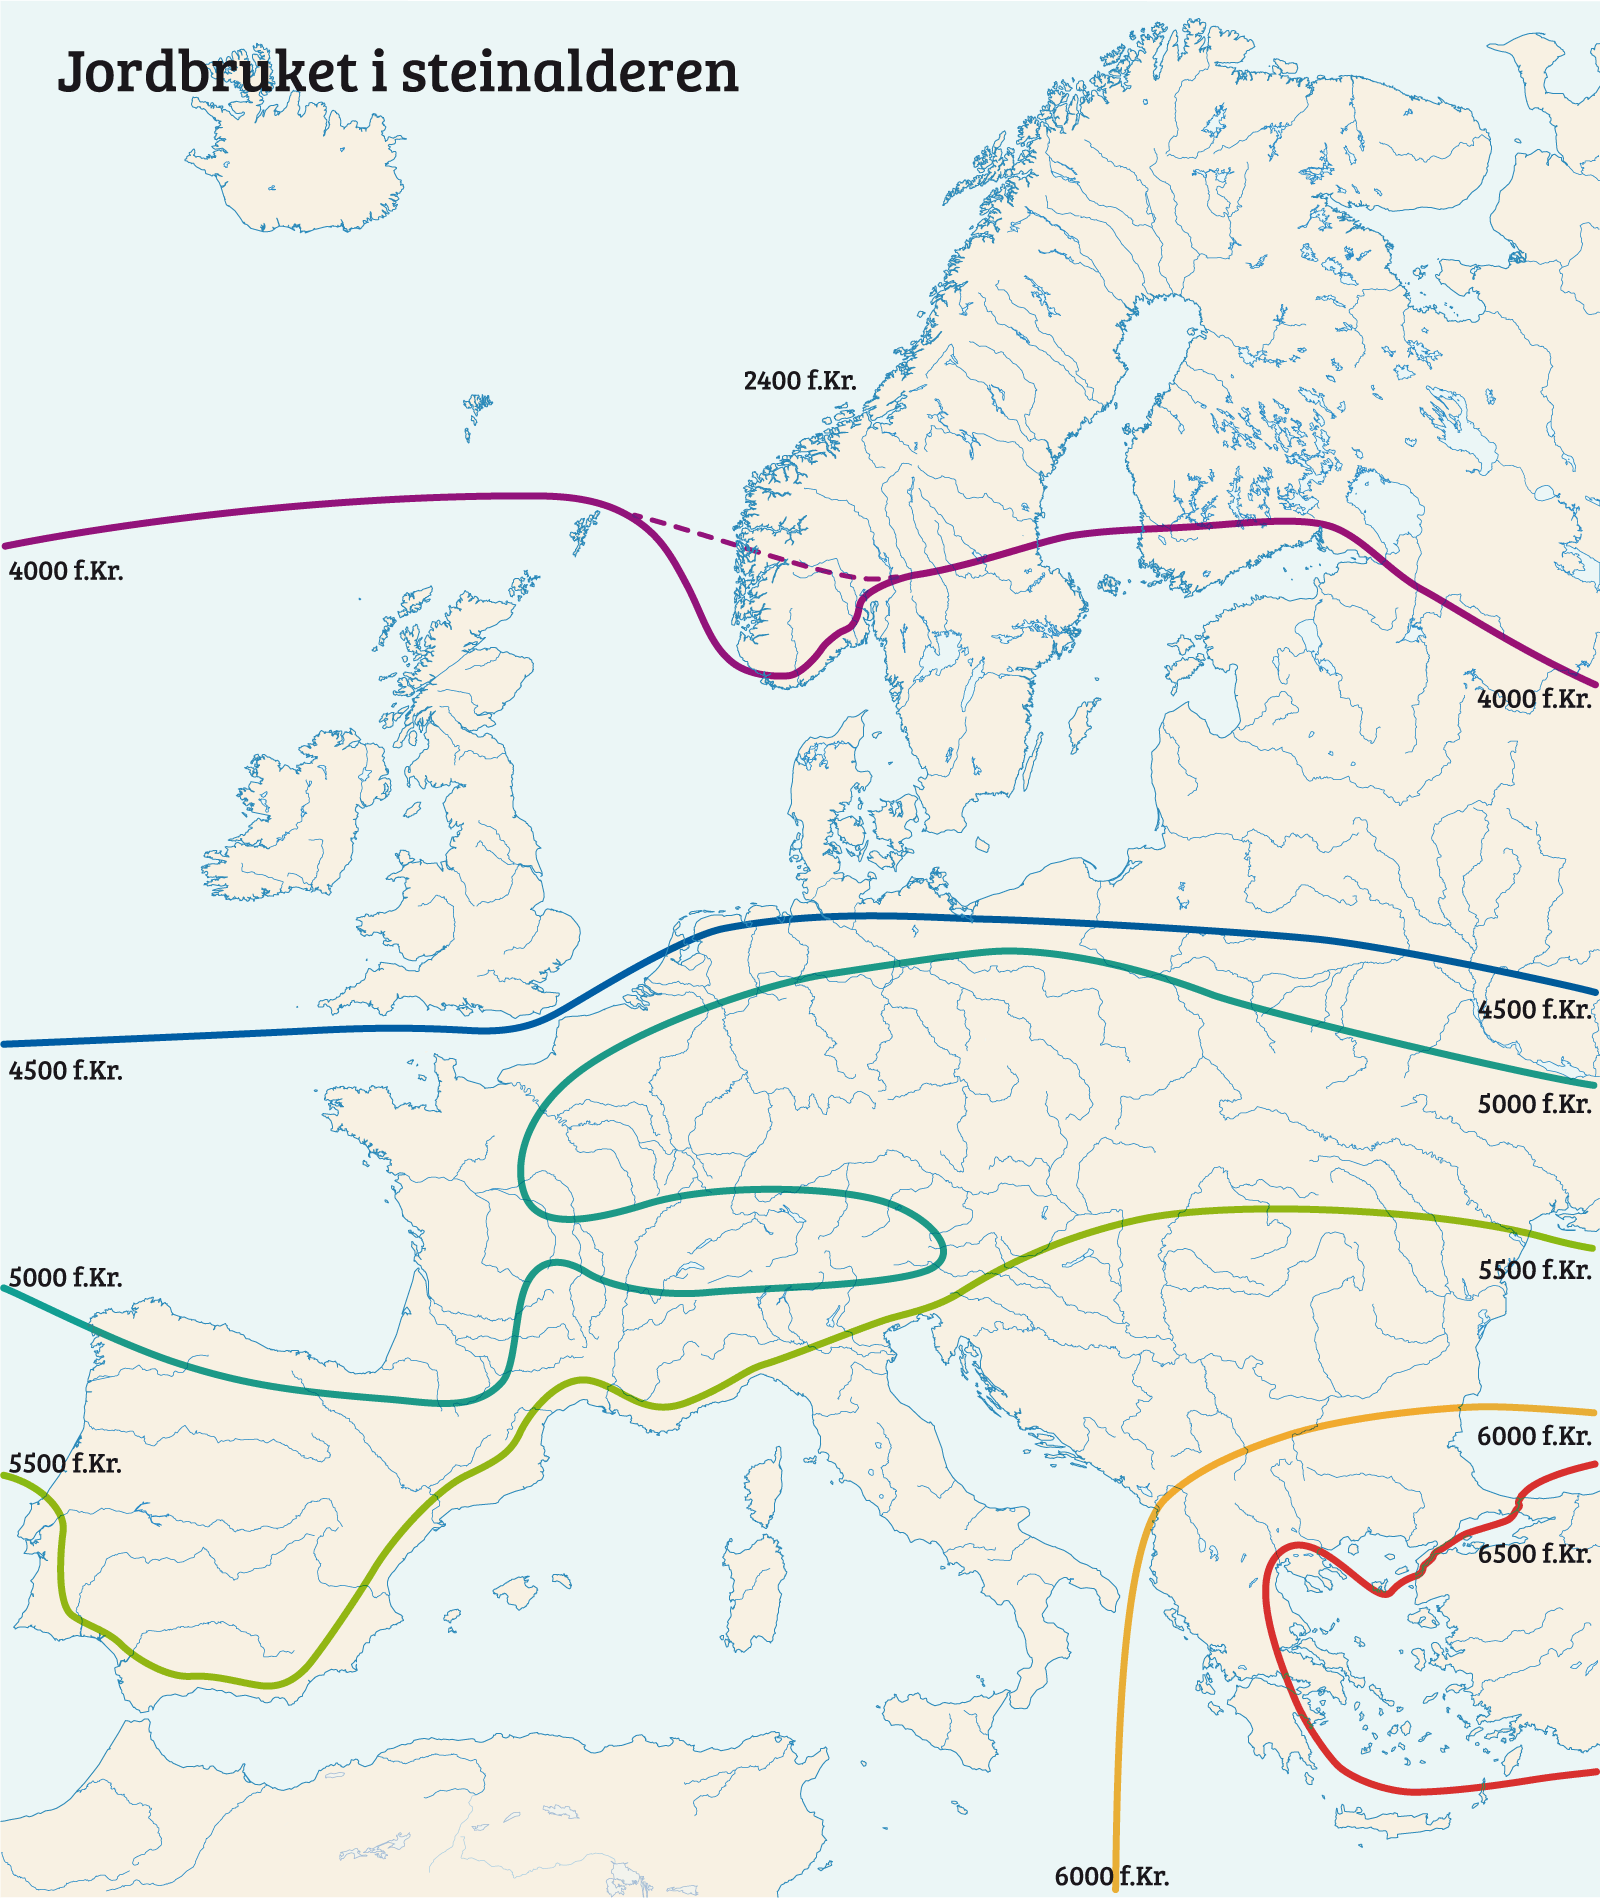 Kart som viser utbredelse av jordbruk i Europa i forskjellige årtusen i steindalderen